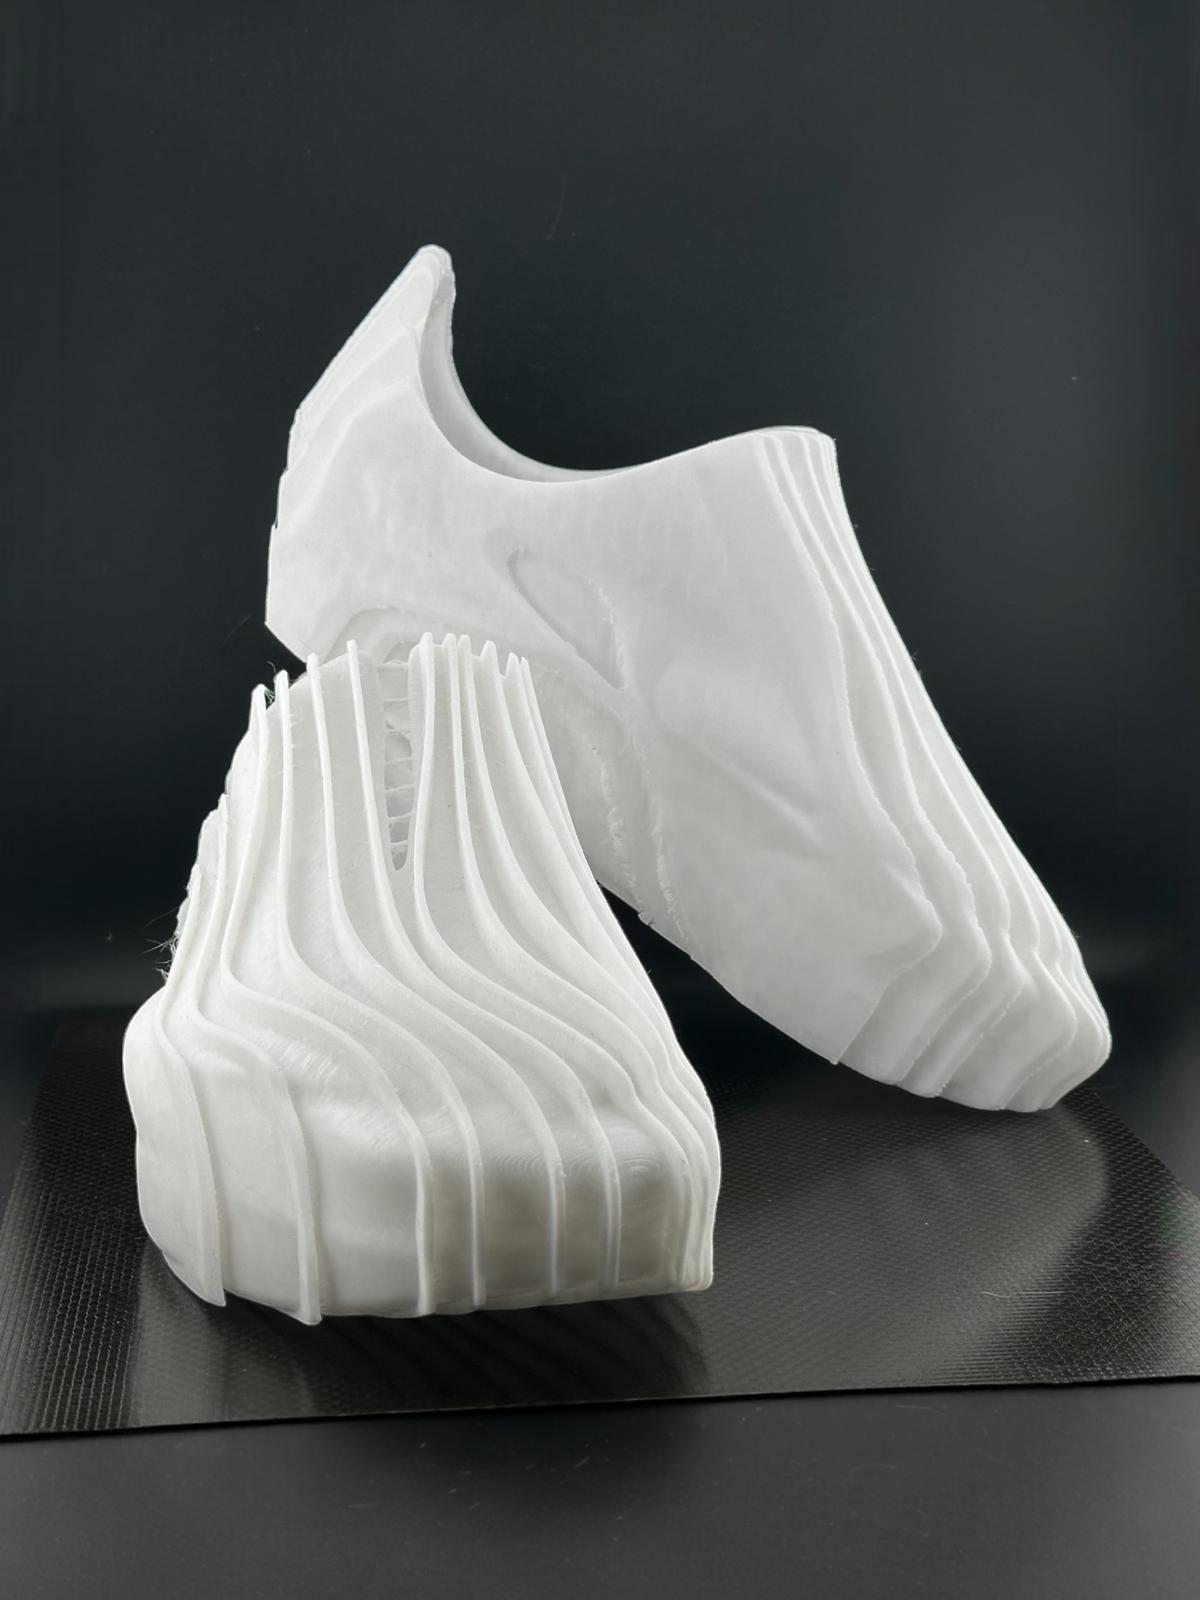 Wearable Wavy shoes 3d model